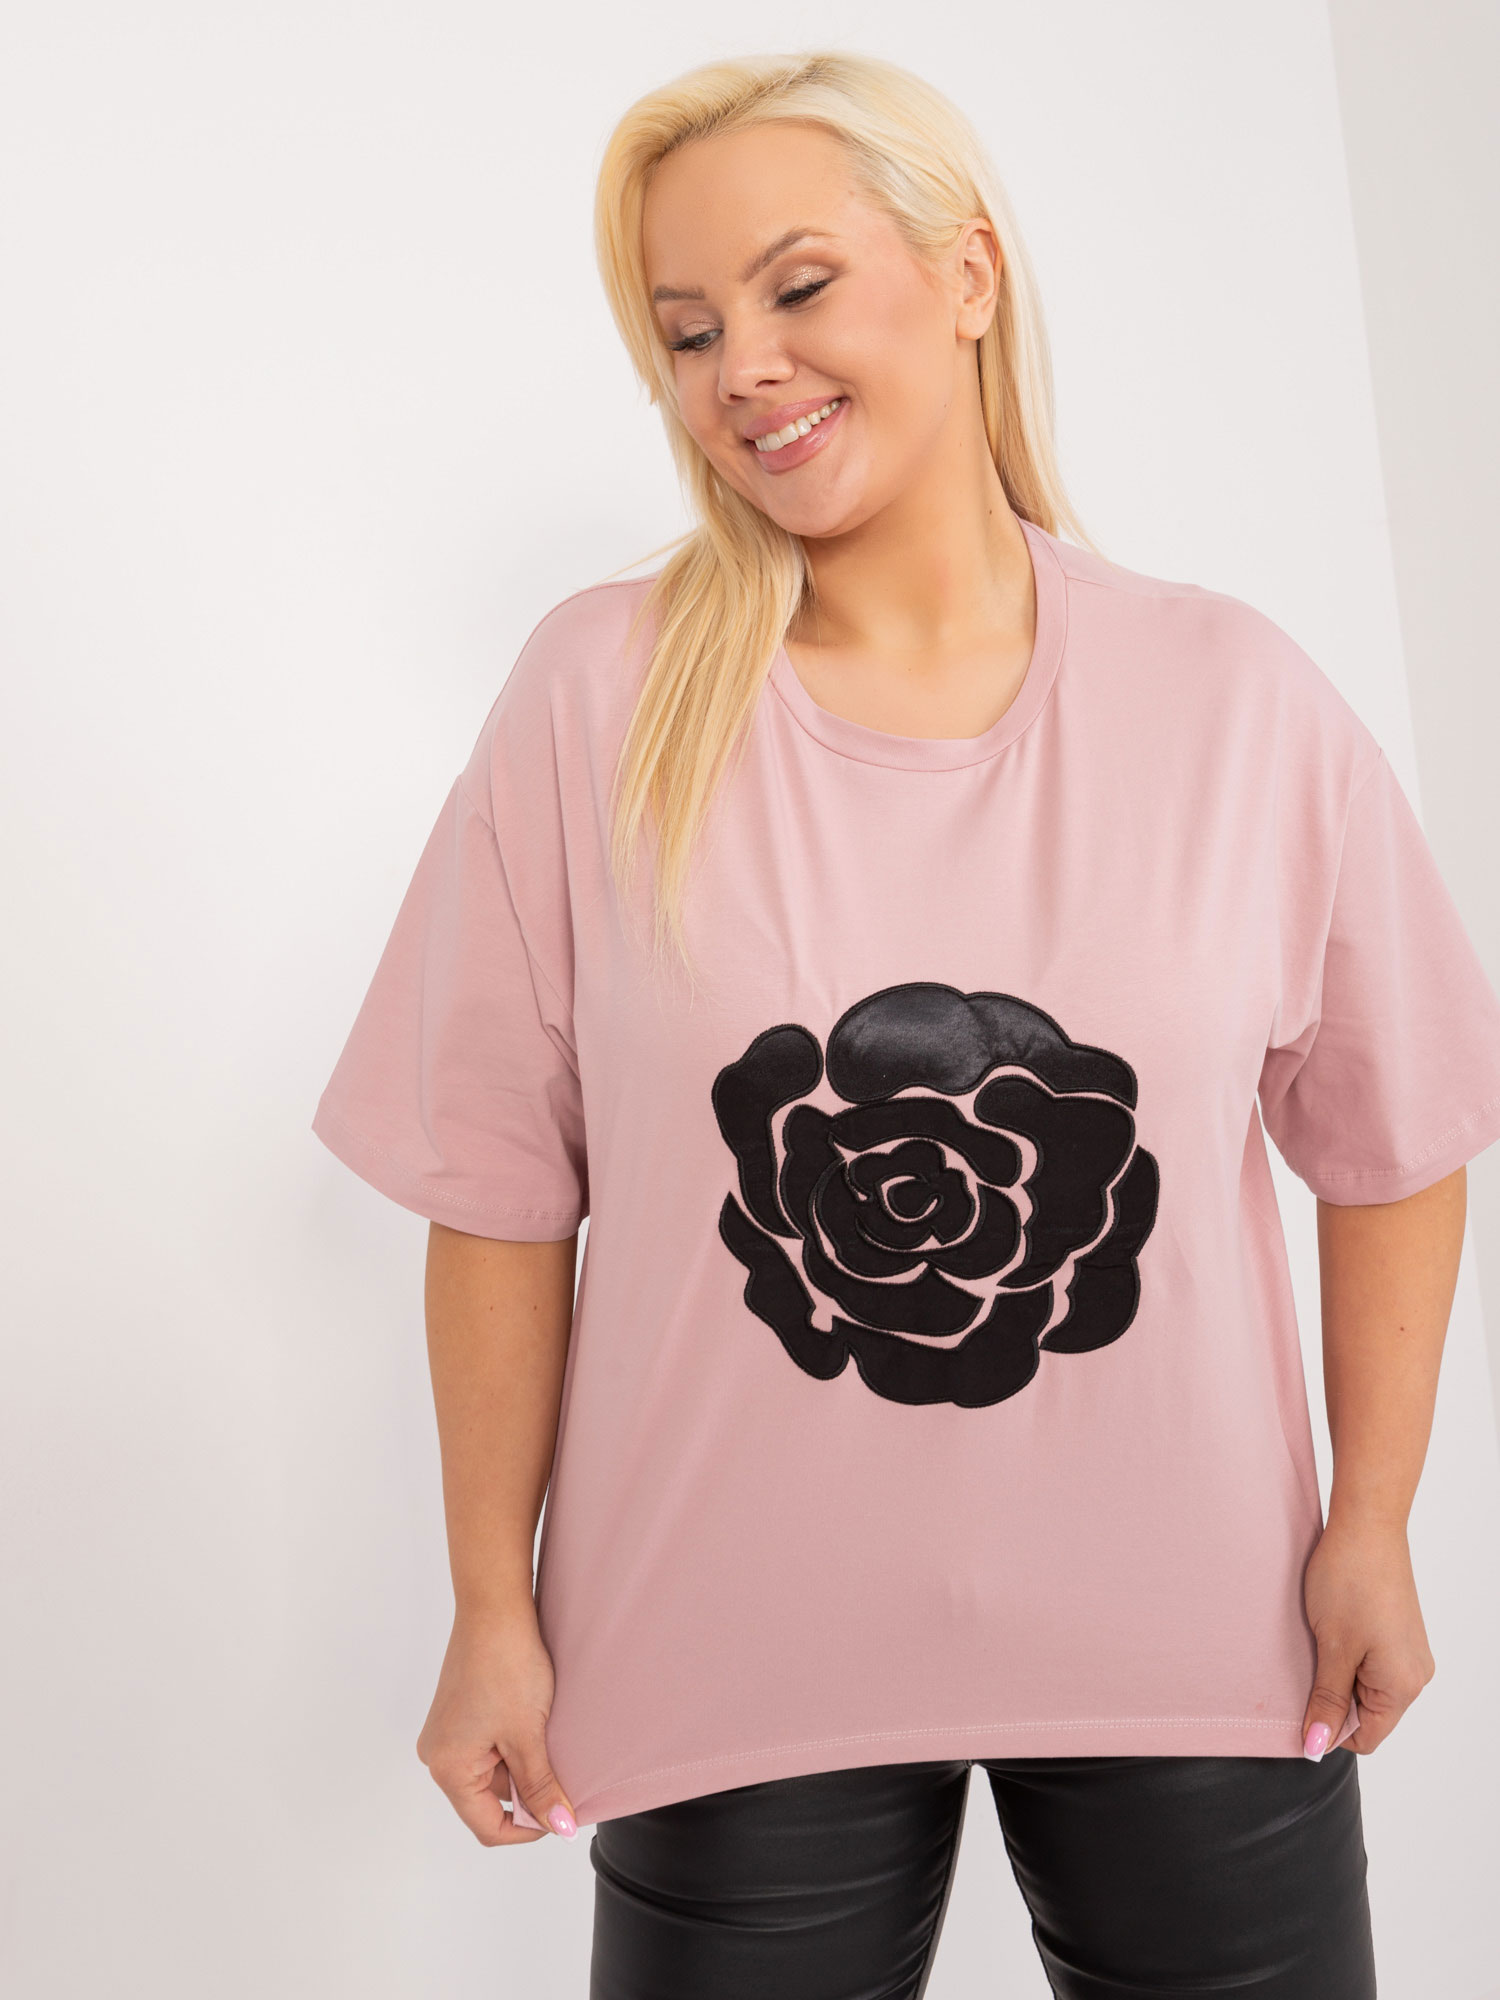 Světle růžové tričko s aplikací květiny -FA-BZ-9325.59-pink Velikost: ONE SIZE